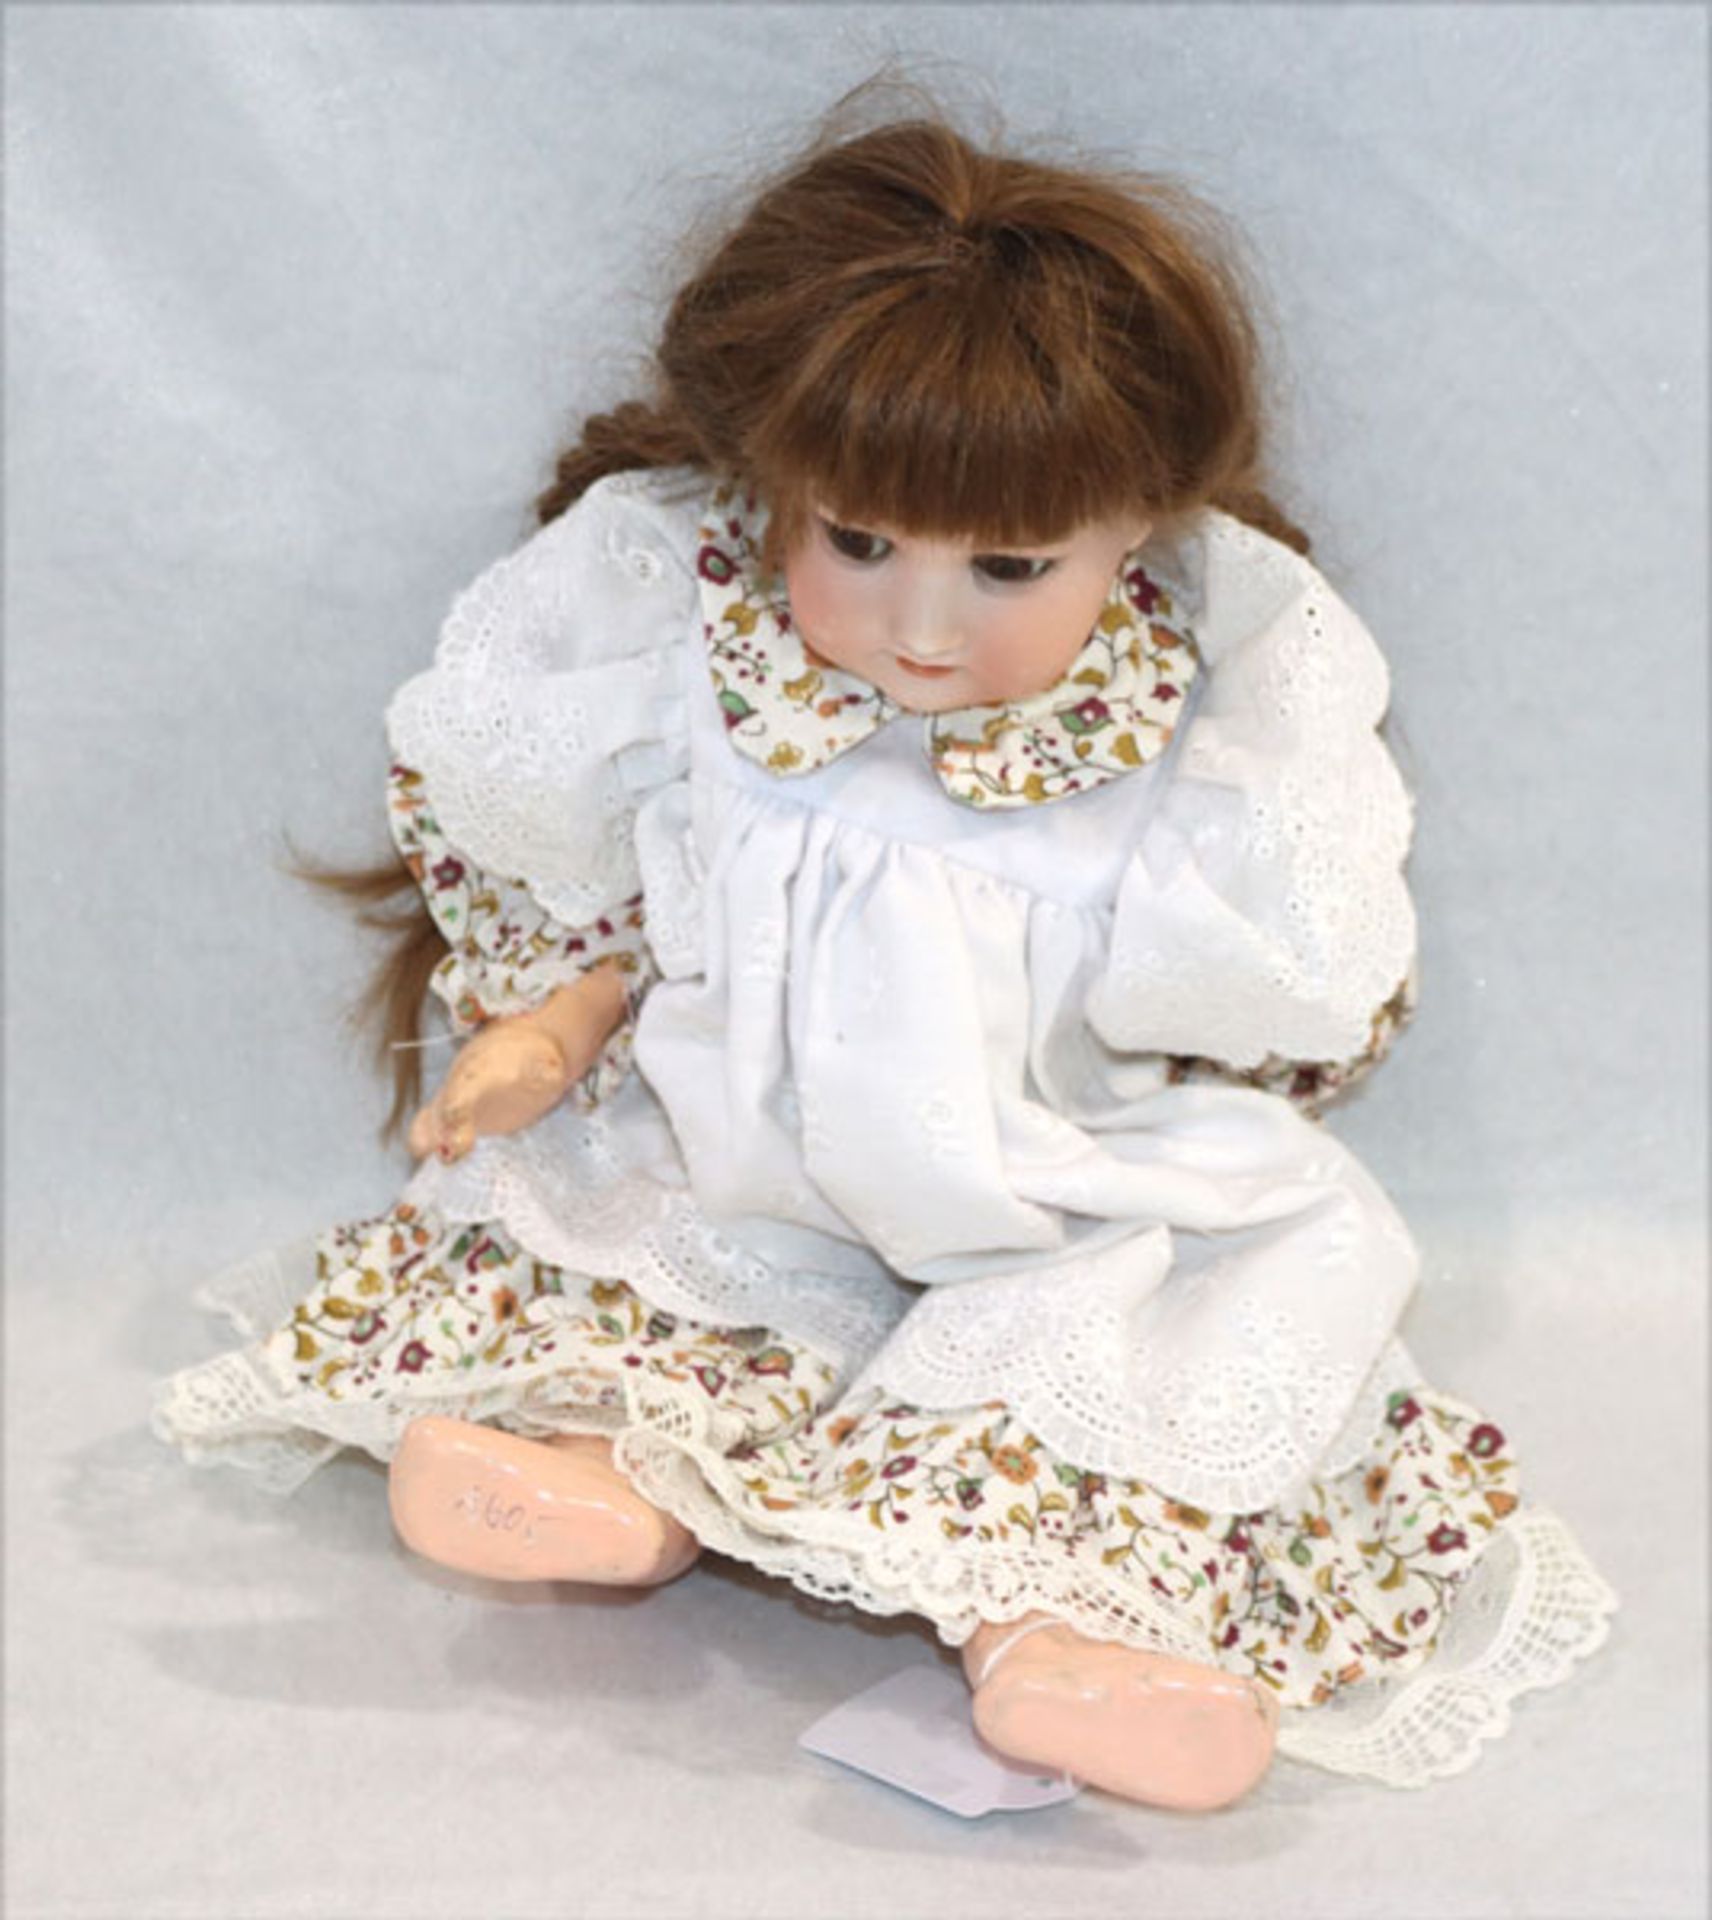 Armand Marseille Puppe, Nr. 390 n, Porzellankopf mit Gliederkörper, beschädigt und bestossen,